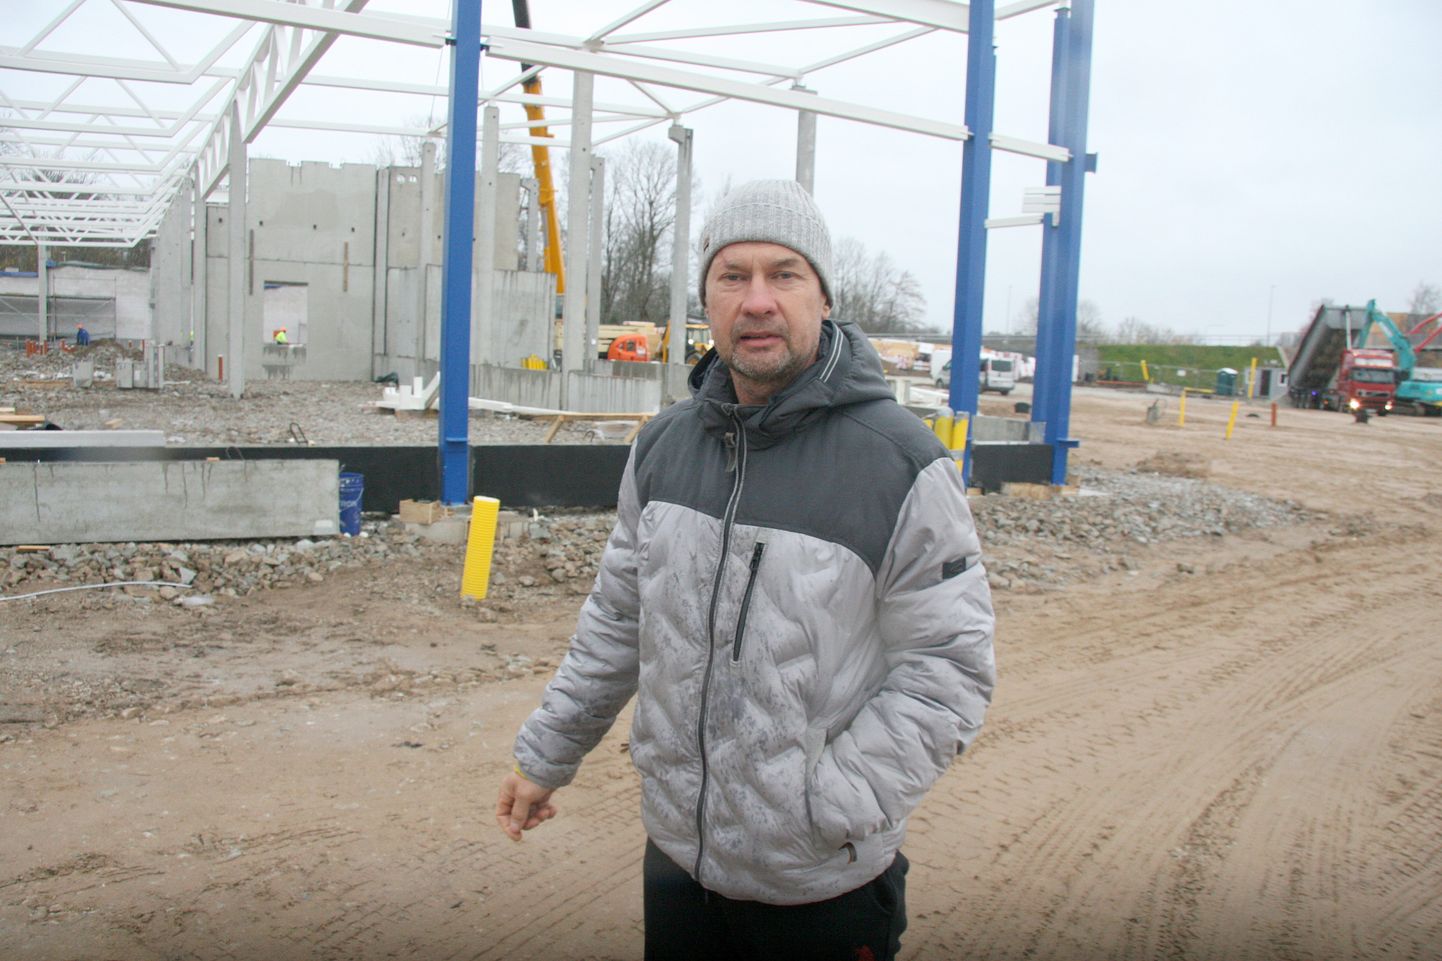 Kuigi Lidl Eesti likvideeris veetorustiku kooskõlas lammutusprojektiga, leiab Toomas Ziljov, et firma peaks talle lõhkumisega tekitatud kahju hüvitama.